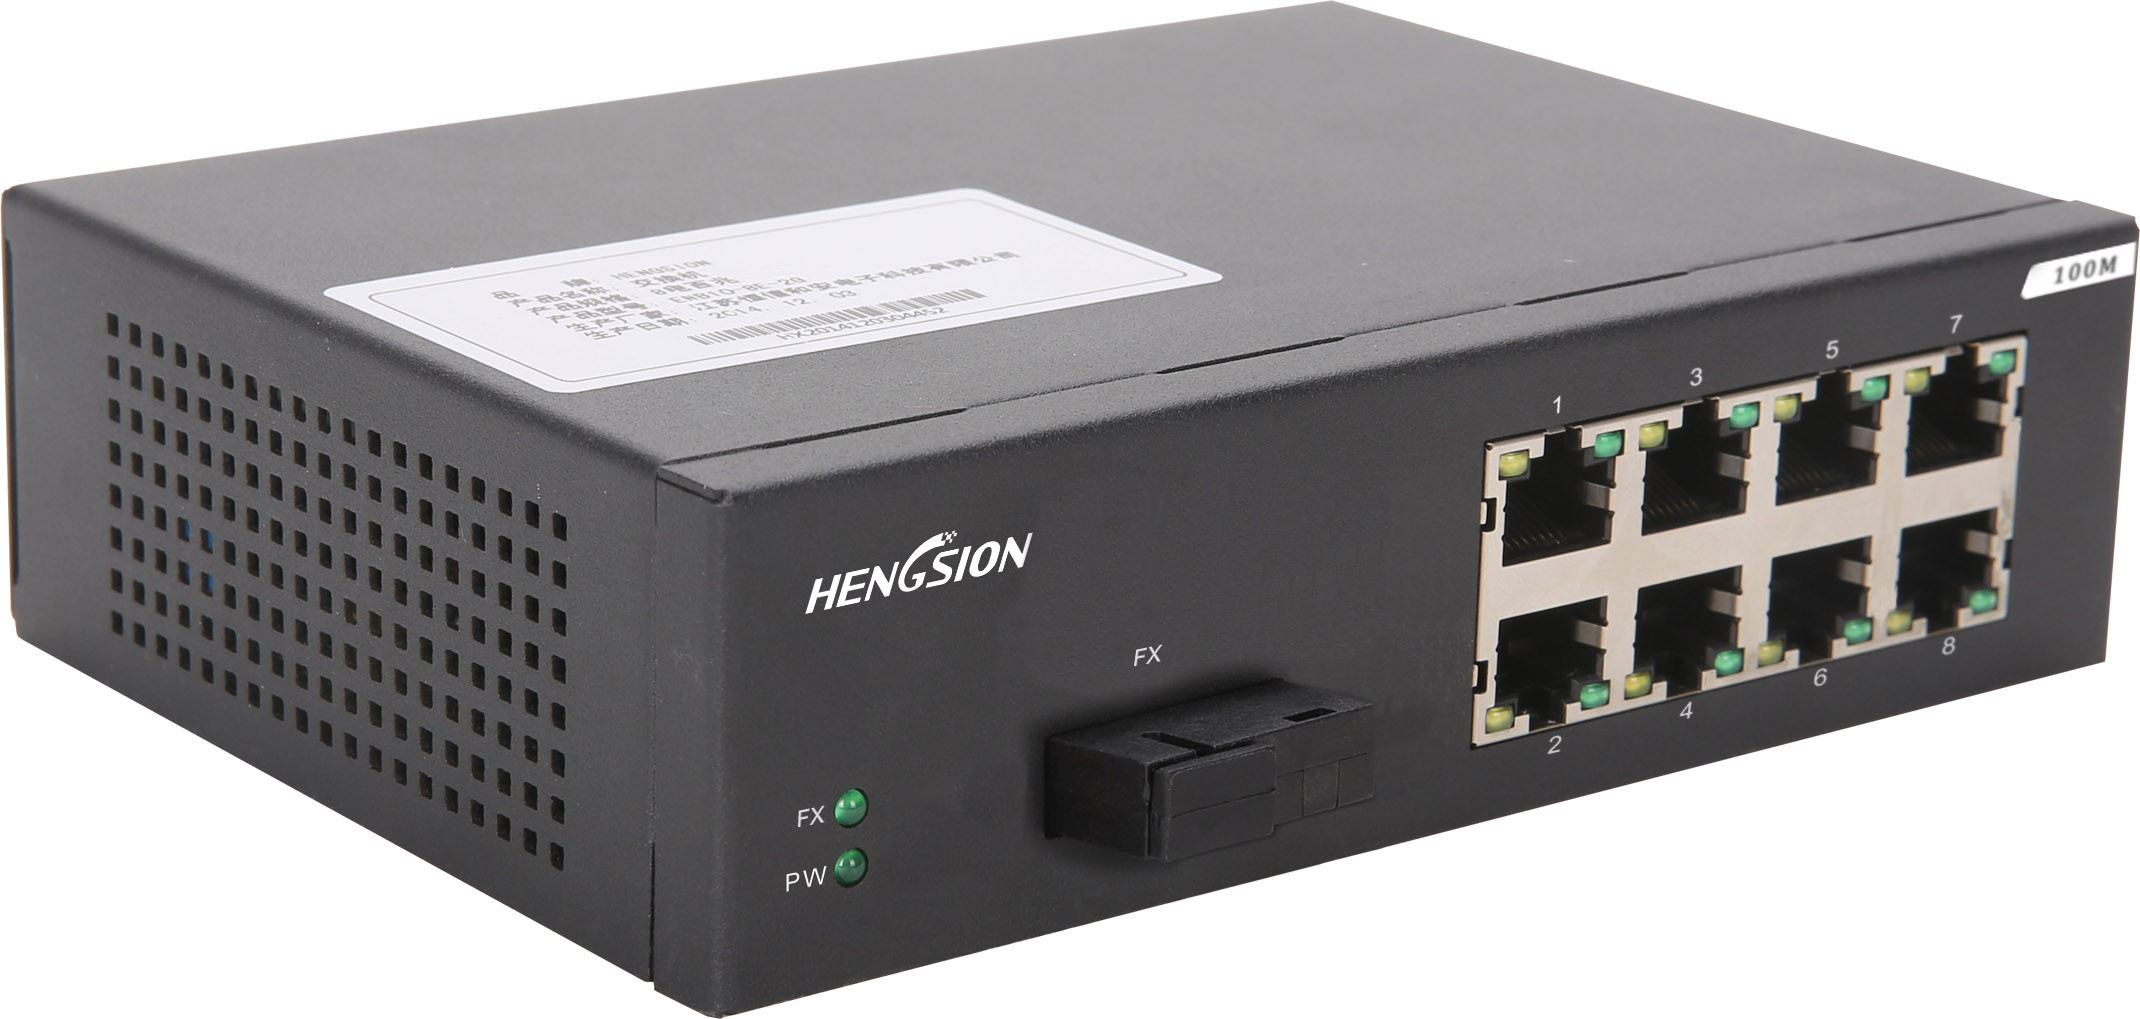 Switch picture. Порт 10/100base-TX. Медиаконвертер промышленный Gigabit Ethernet 10/100/100base-TX. Порта 100m/Gigabit SFP. Сетевой коммутатор 6 порта 10/100/100 Base 2/4 SFP.